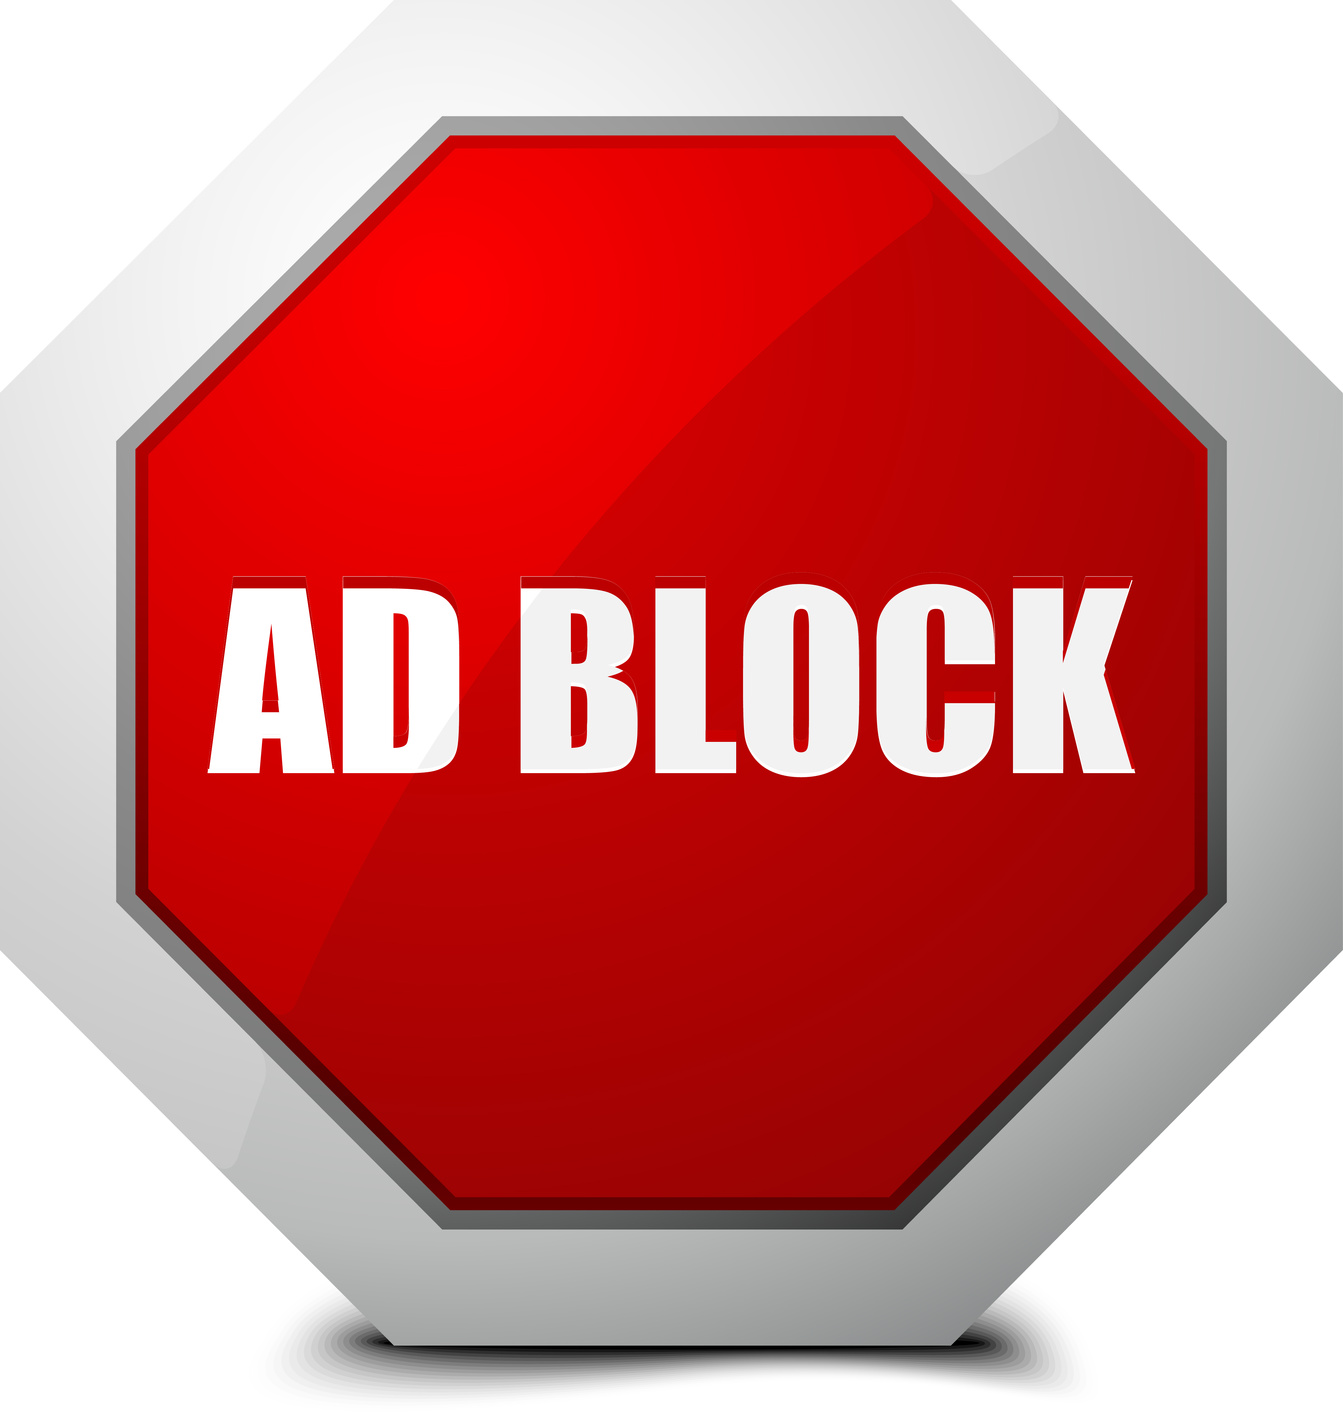 Abc блокировка рекламы